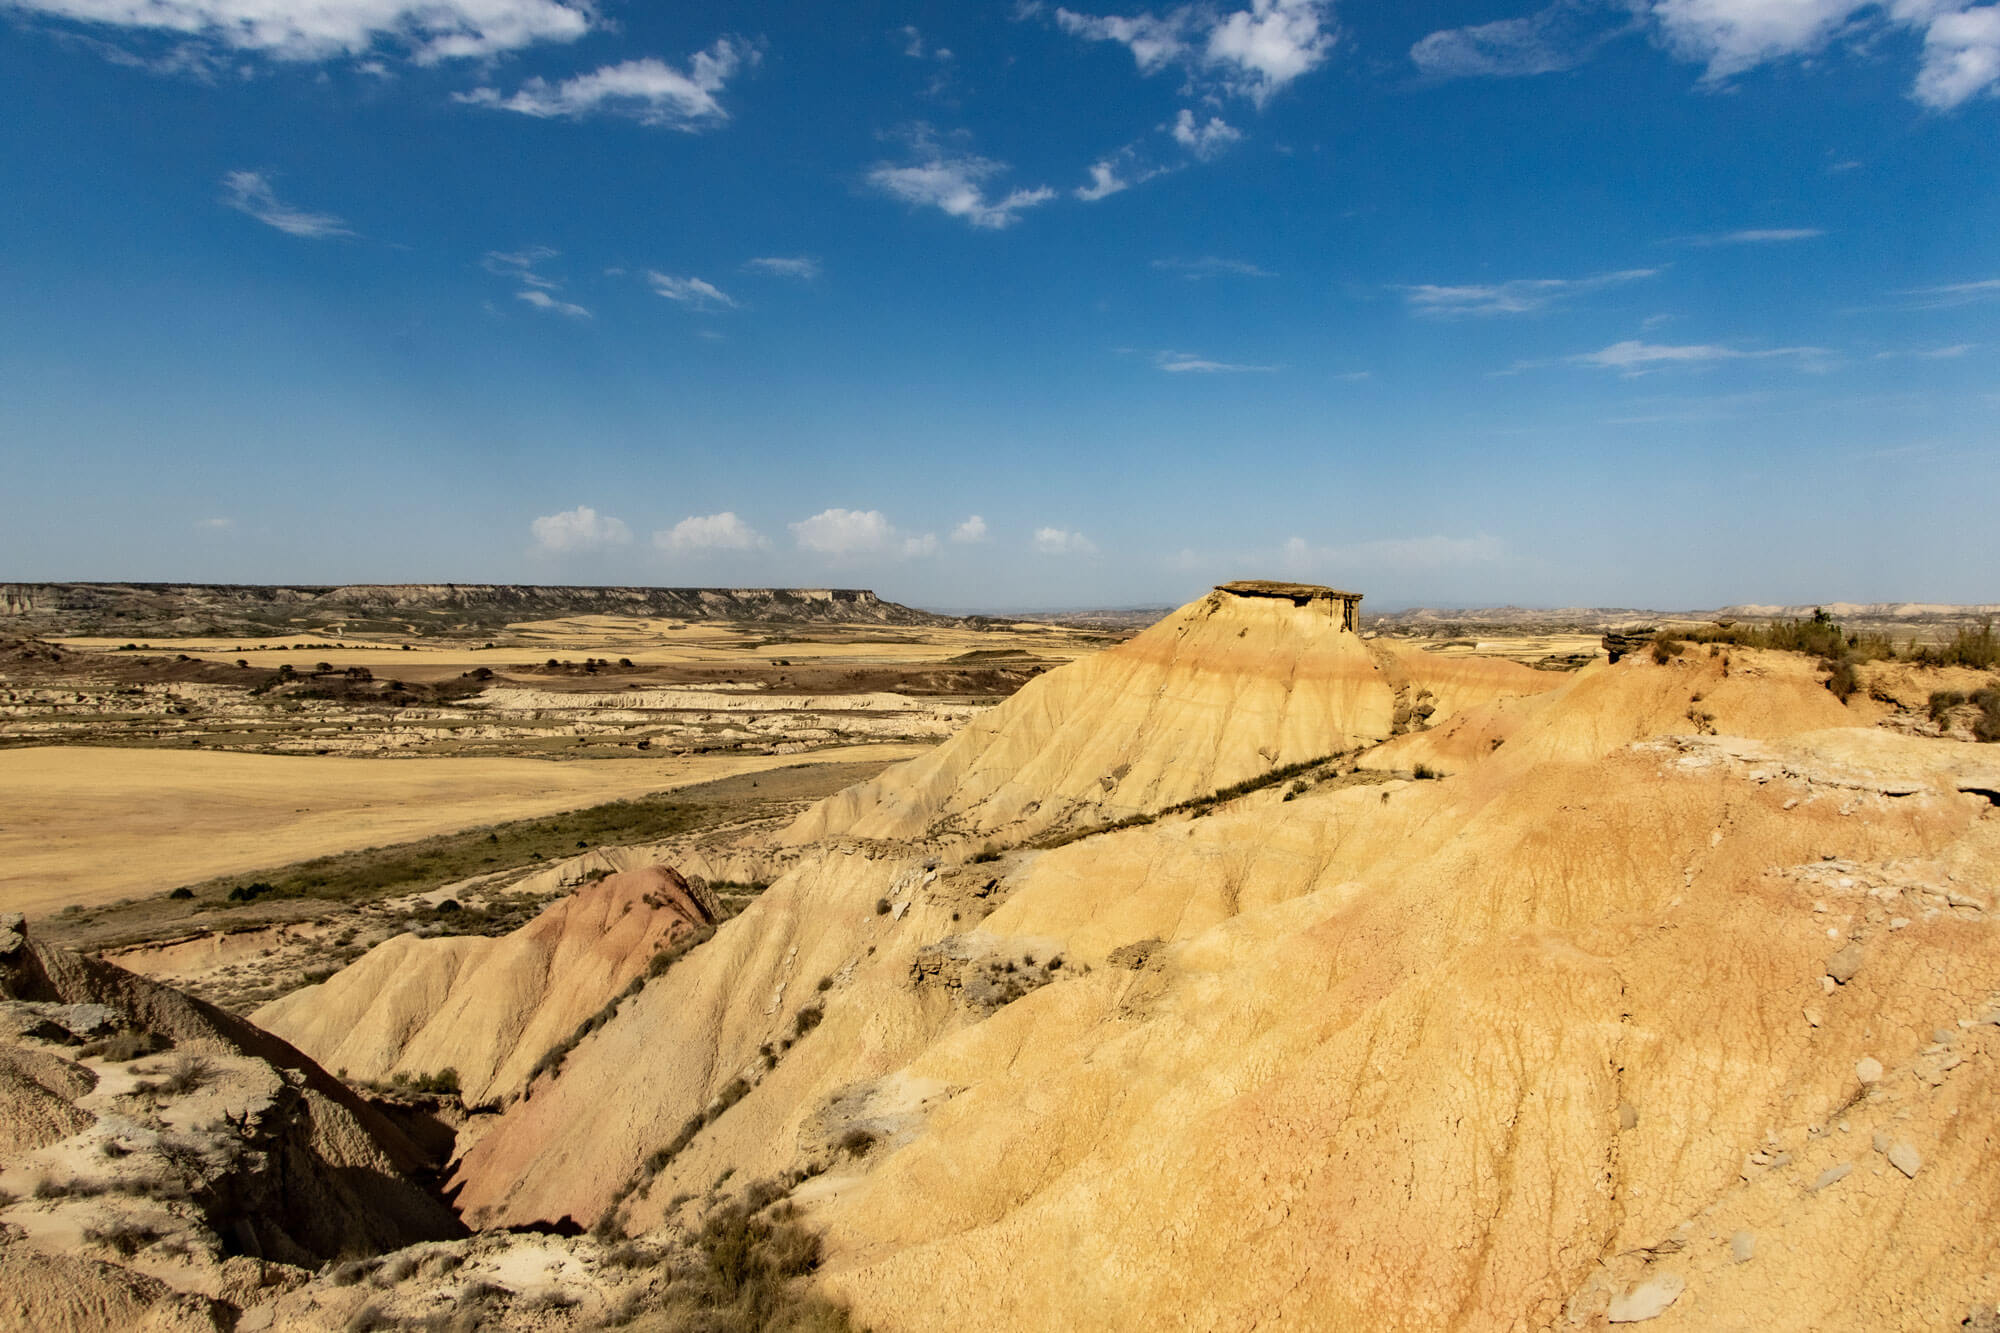 Von einer Anhöhe in der Halbwüste aus erblickt man die weite zerklüftete Landschaft. Sandsteinformationen und trockene Pflanzen.